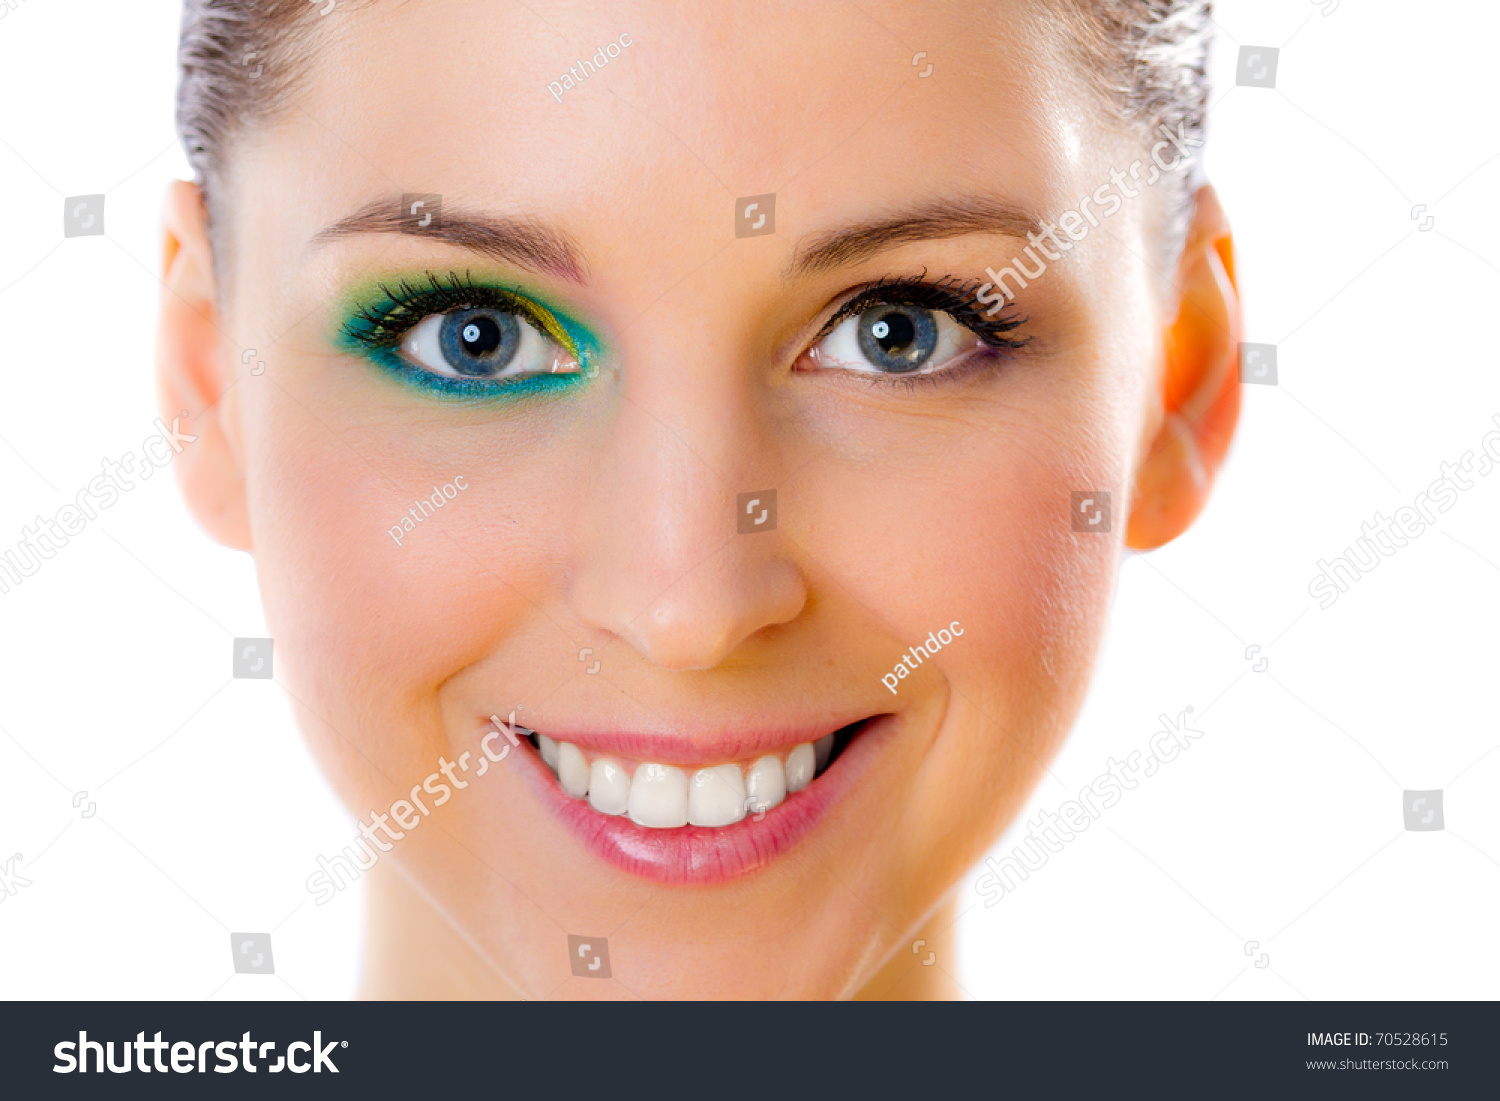 Closeup Of A Beautiful Smiling Model Wearing Half Face Makeup Stock ...